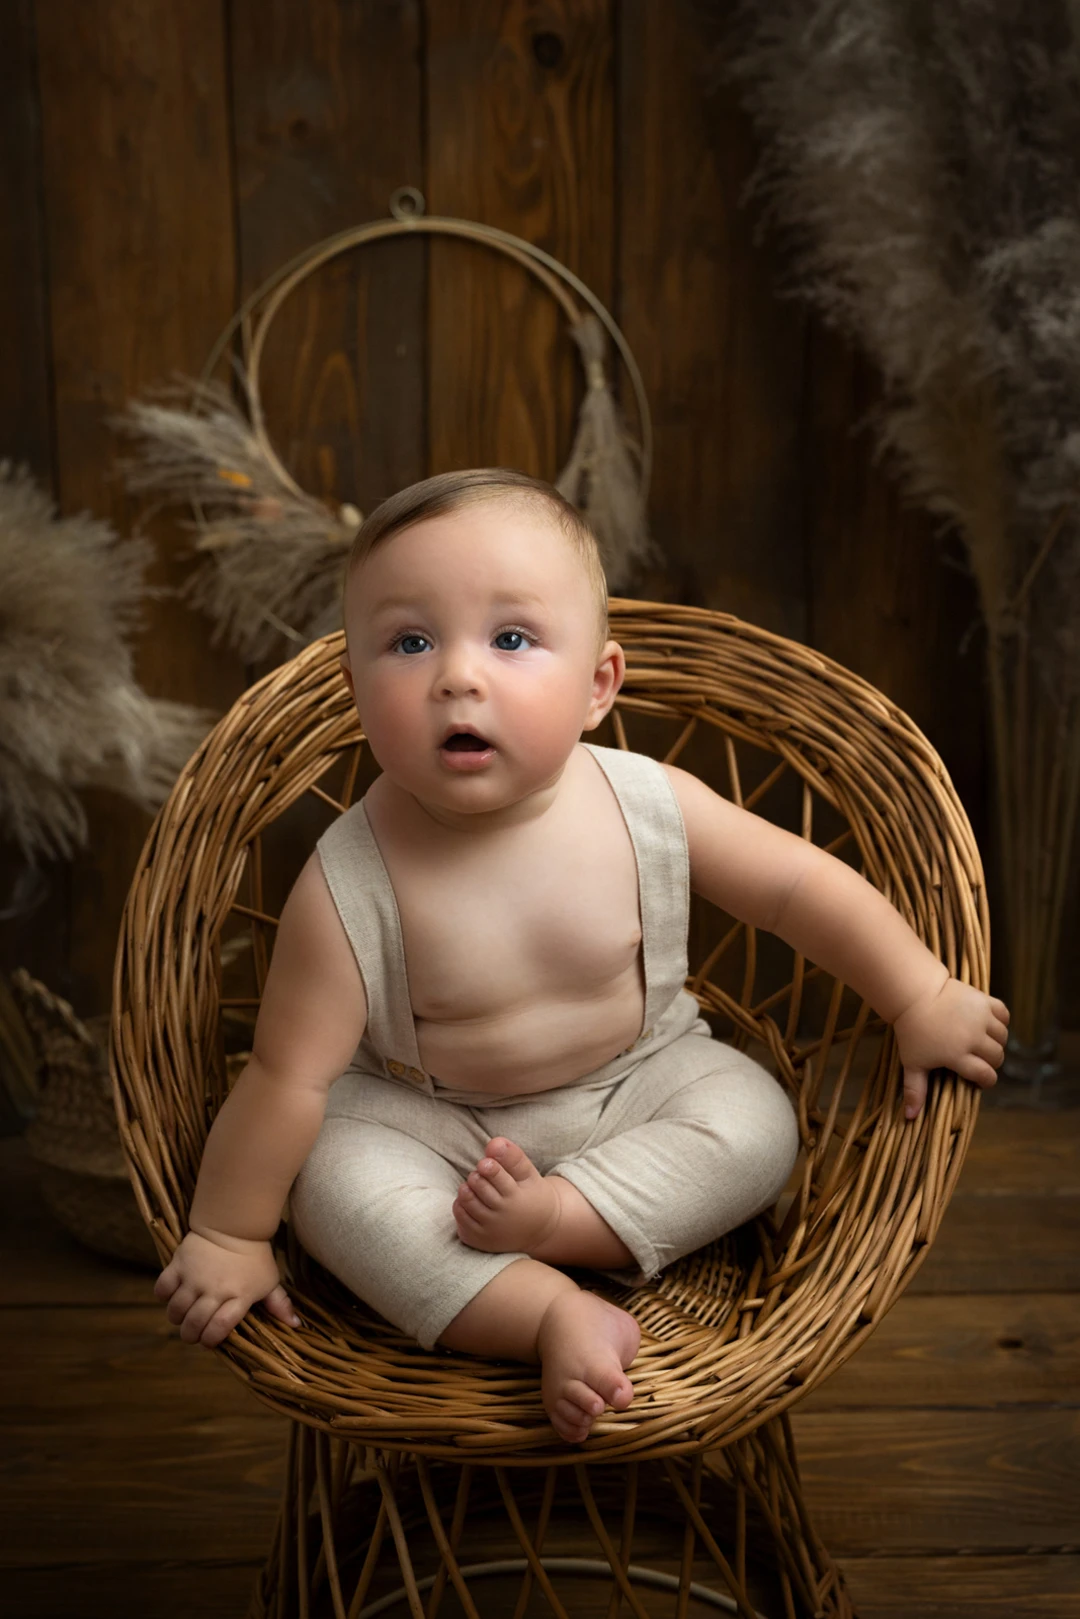 Bebè Baby Photography Isabella Allamandri Ph